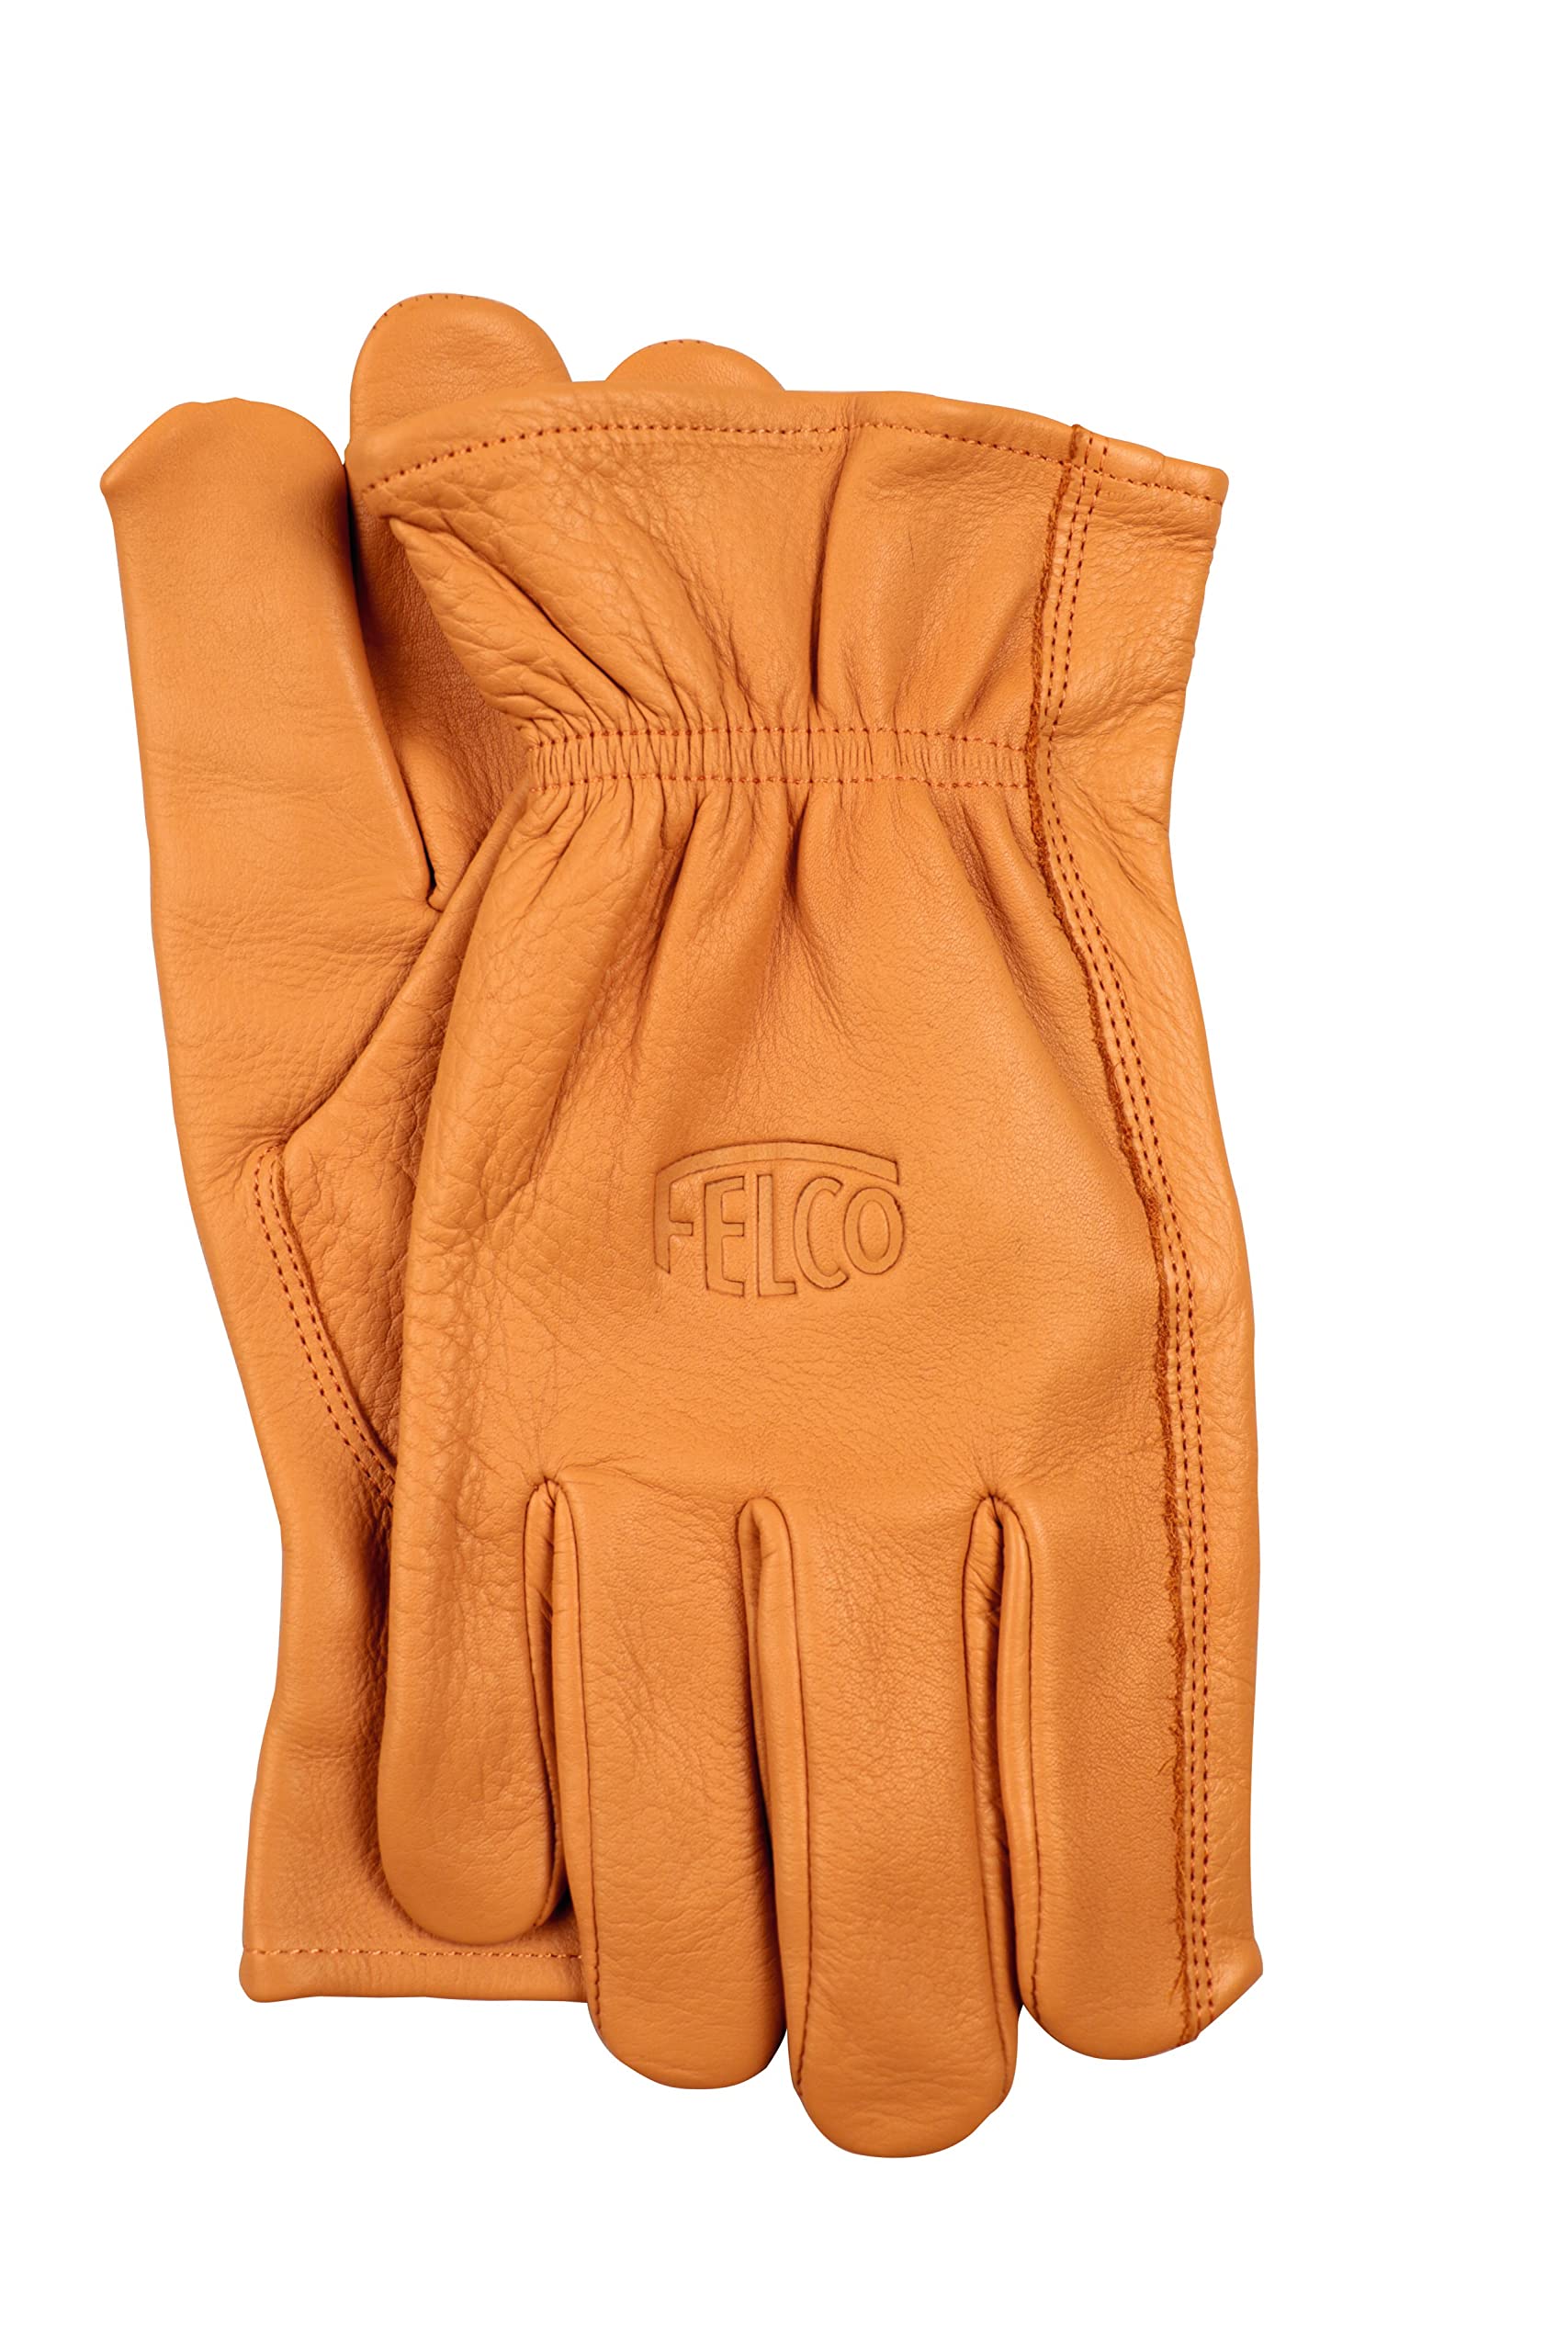 FELCO Handschuhe aus Echtleder 703L (Größe L, durchstoßfestes Rindsleder, Gartenhandschuhe für schwere Schnittarbeiten, naturfarben) FELCO 703L